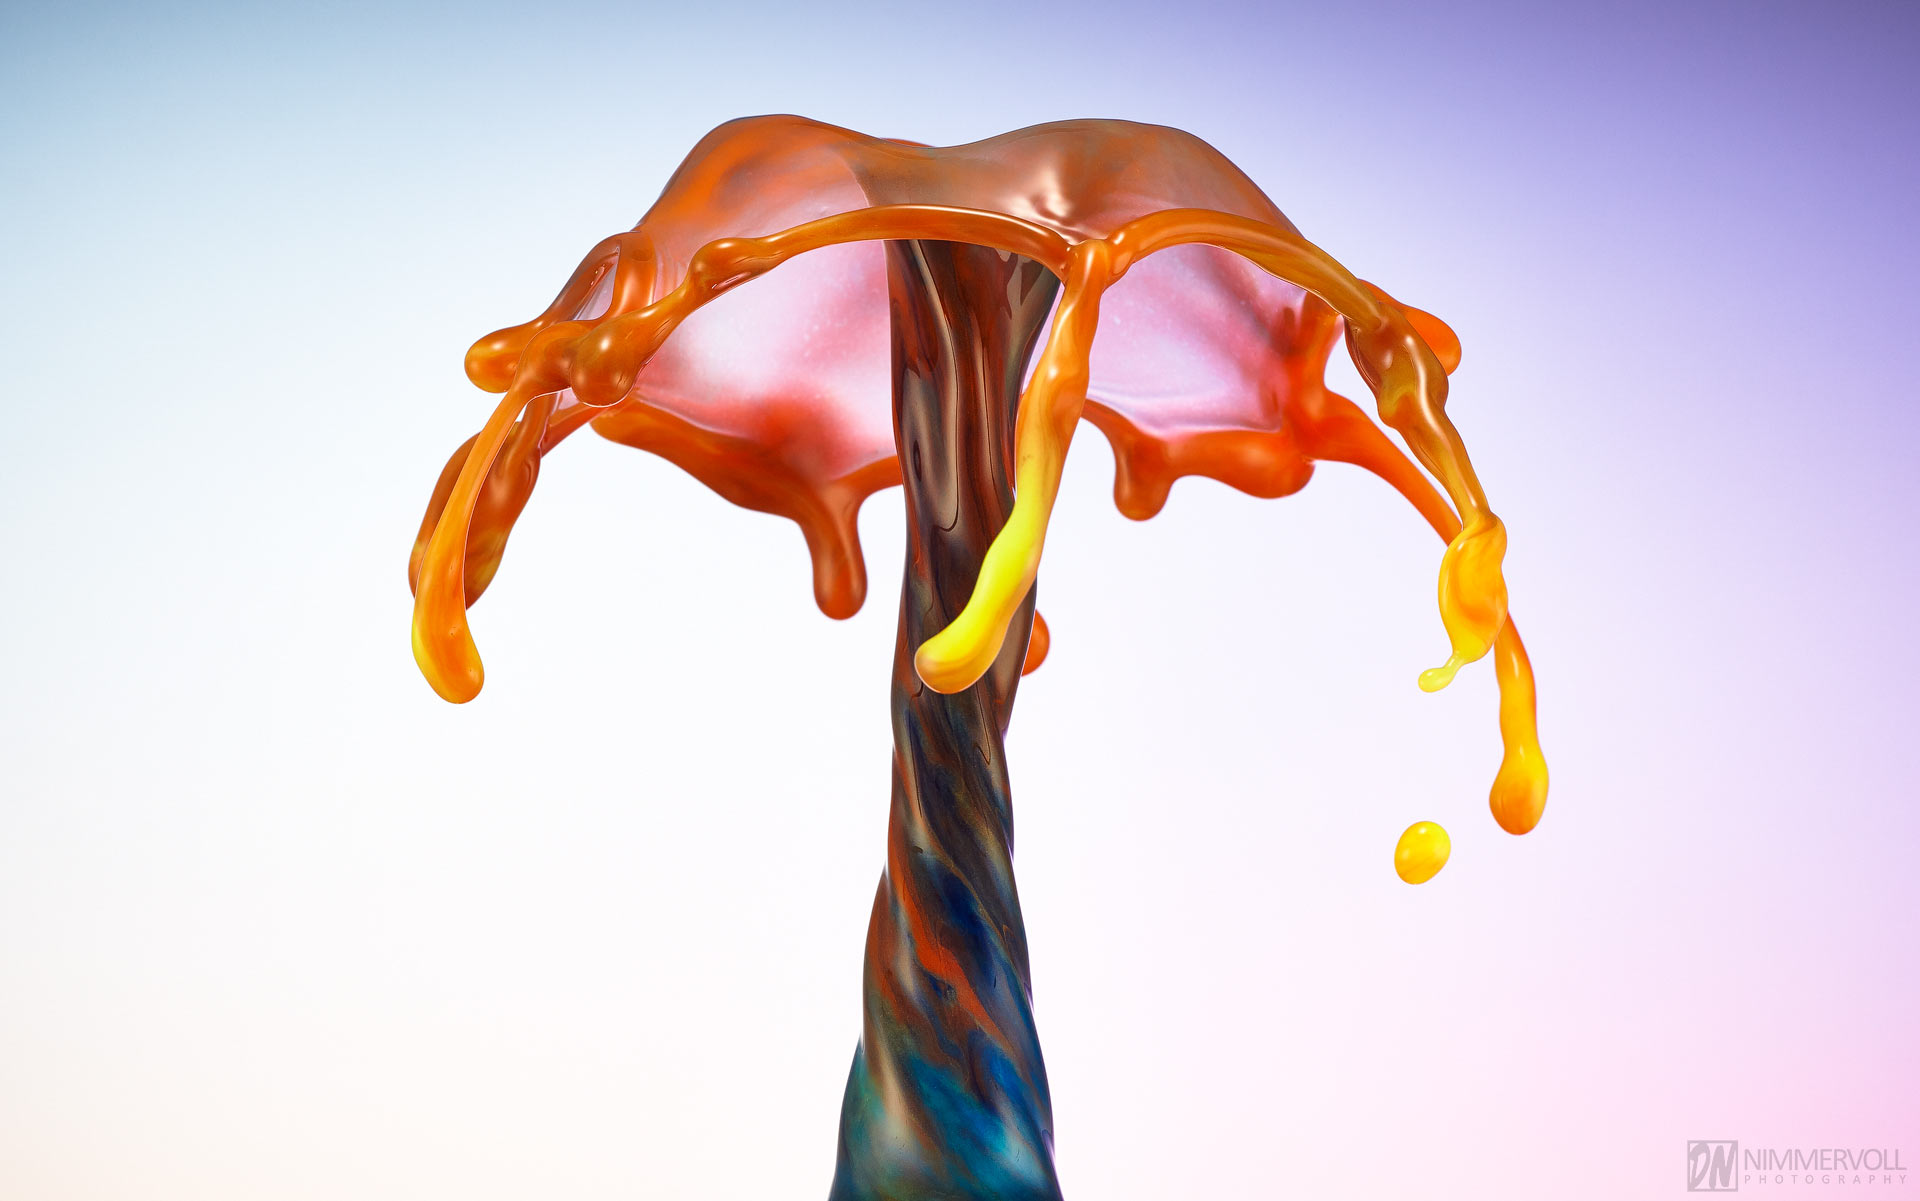 Highspeed Fotografie - Liquid Art Wassertropfen - Nimmervoll background image